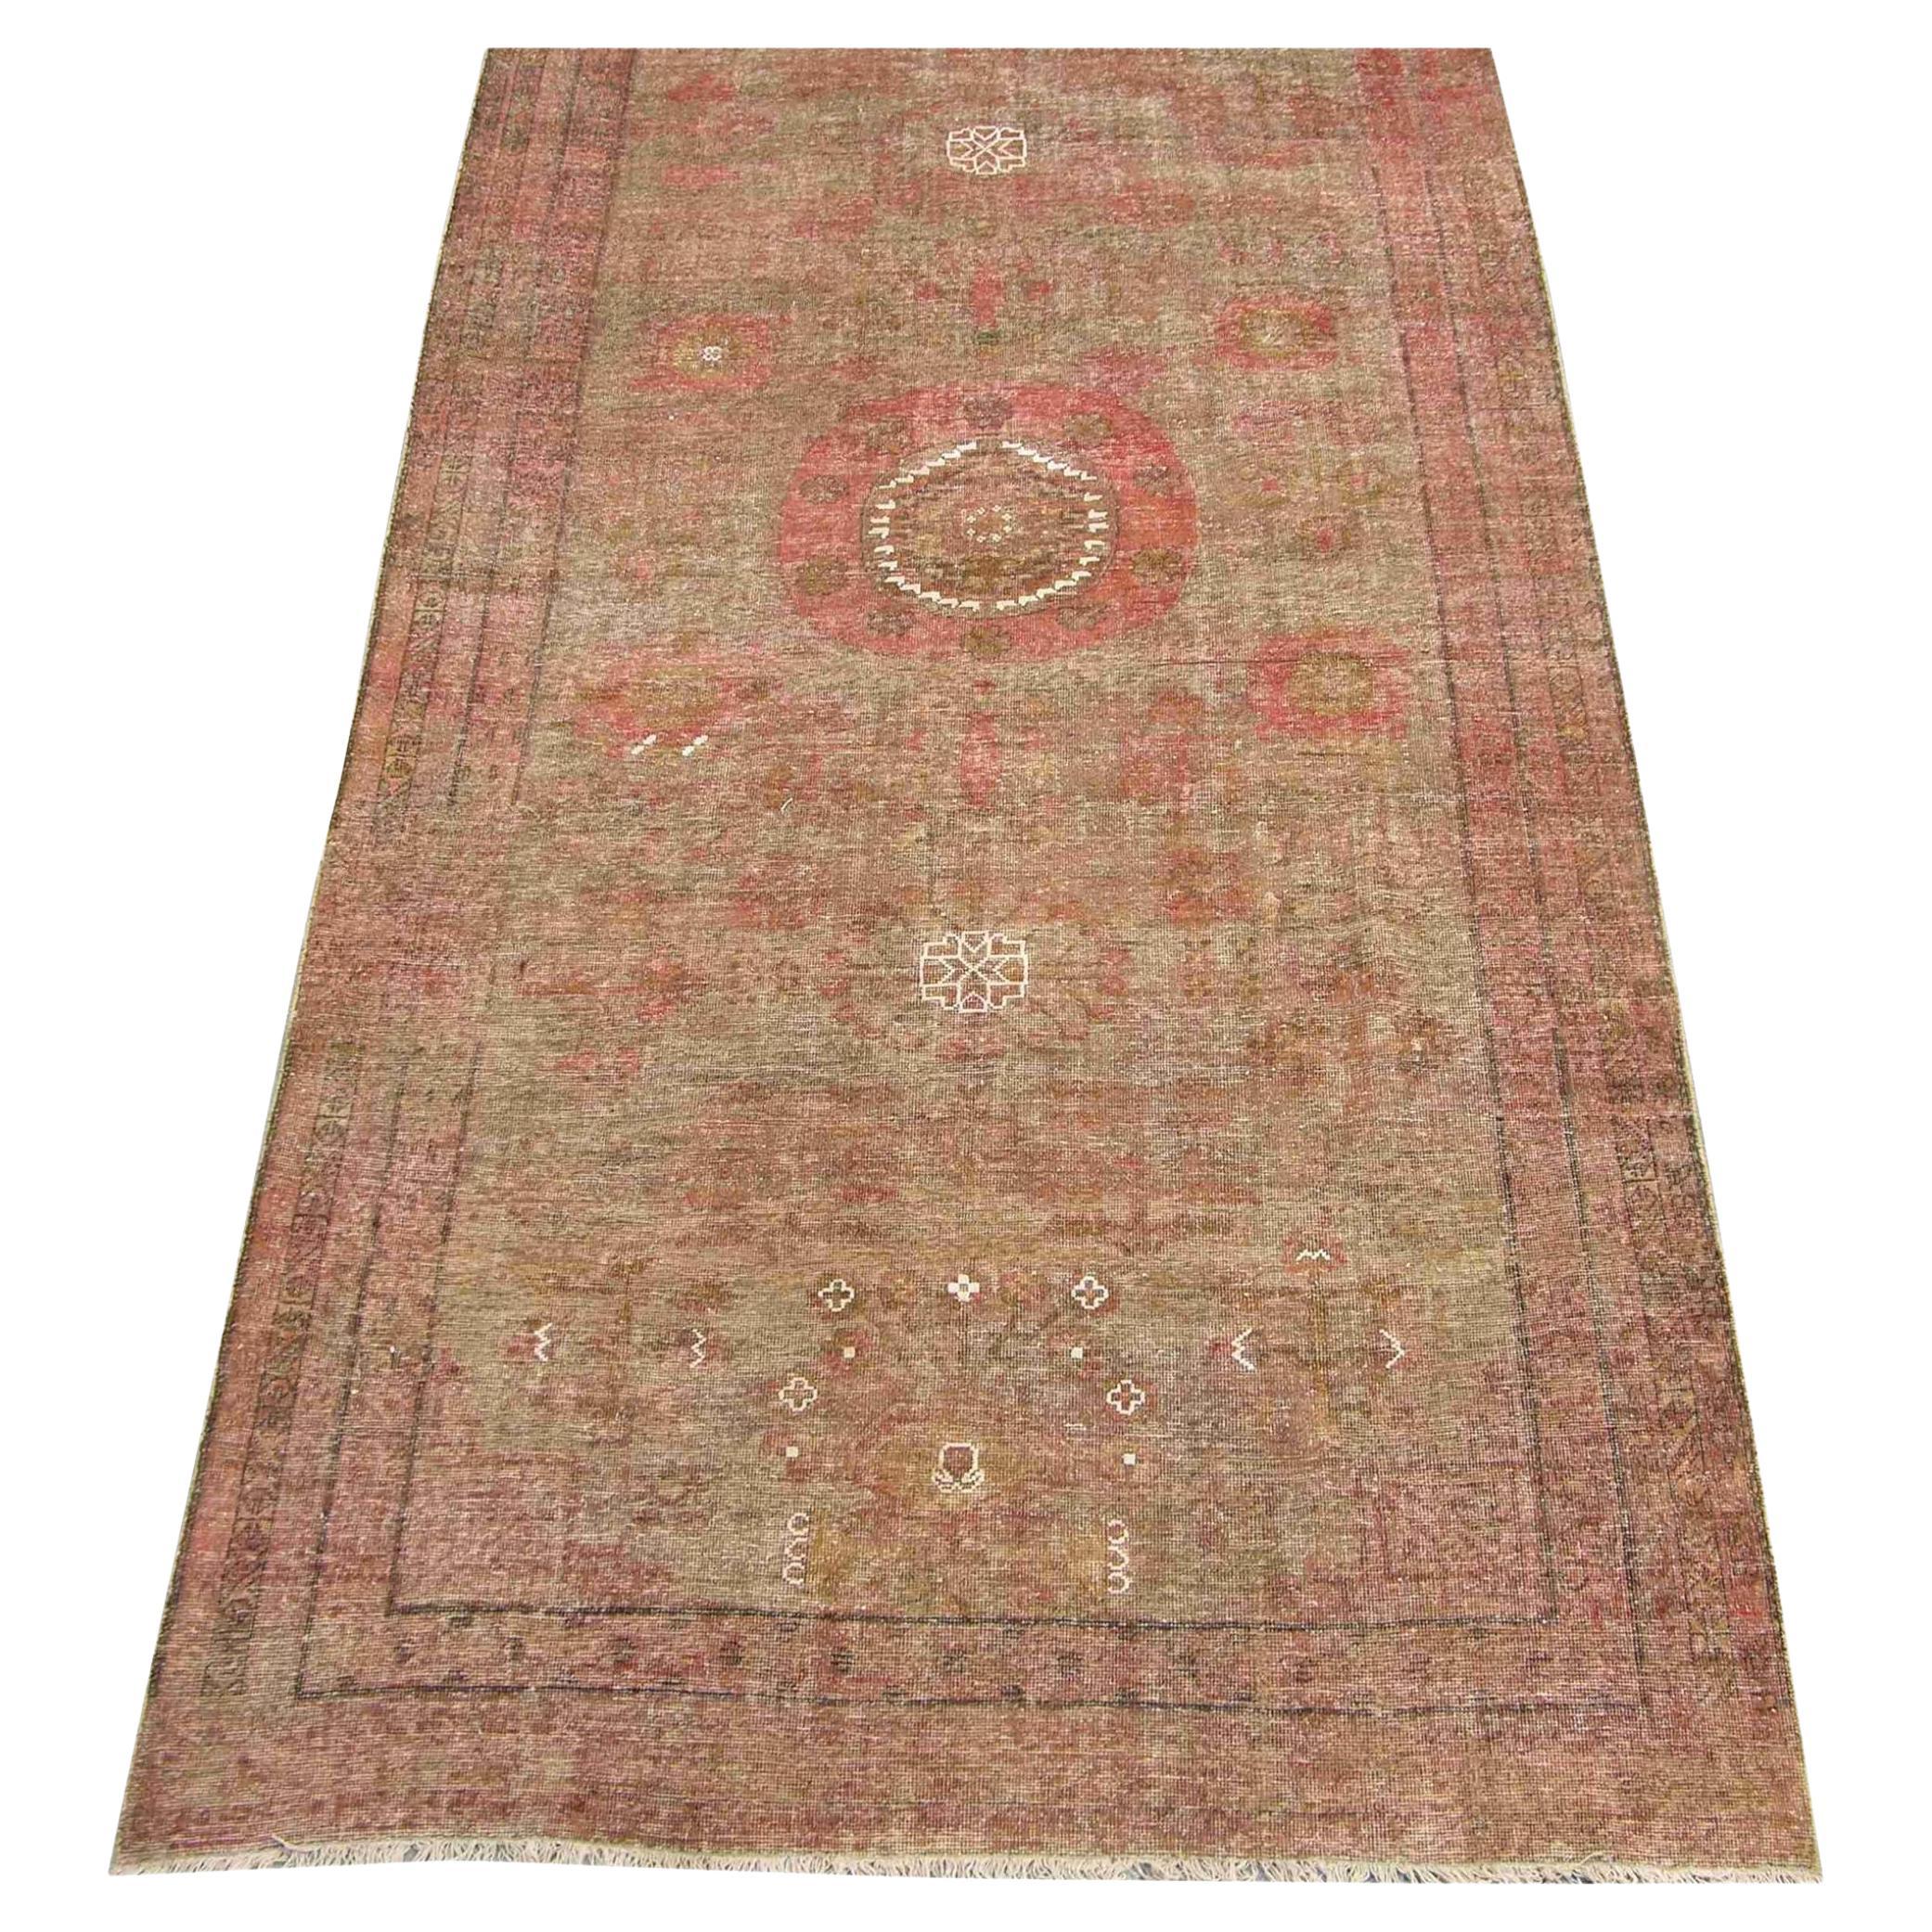 Uzbek Khotan Samarkand-Teppich aus dem 19. Jahrhundert